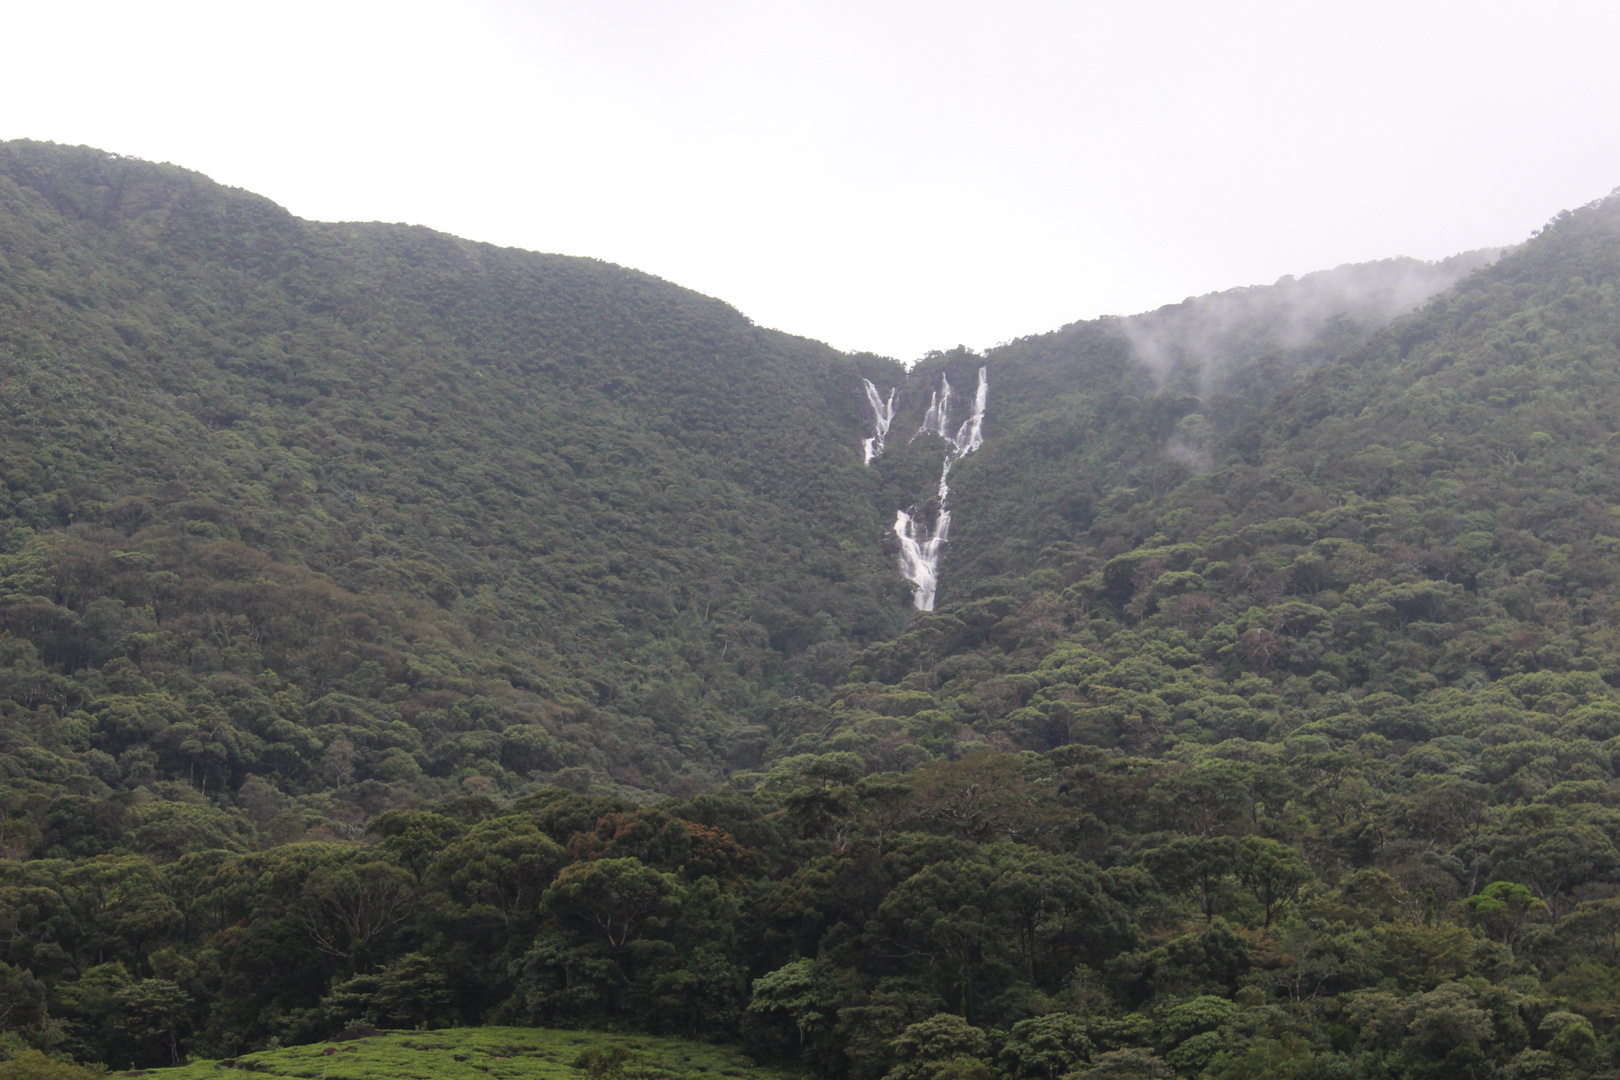 Mächtige Wasserfälle im Regenwald